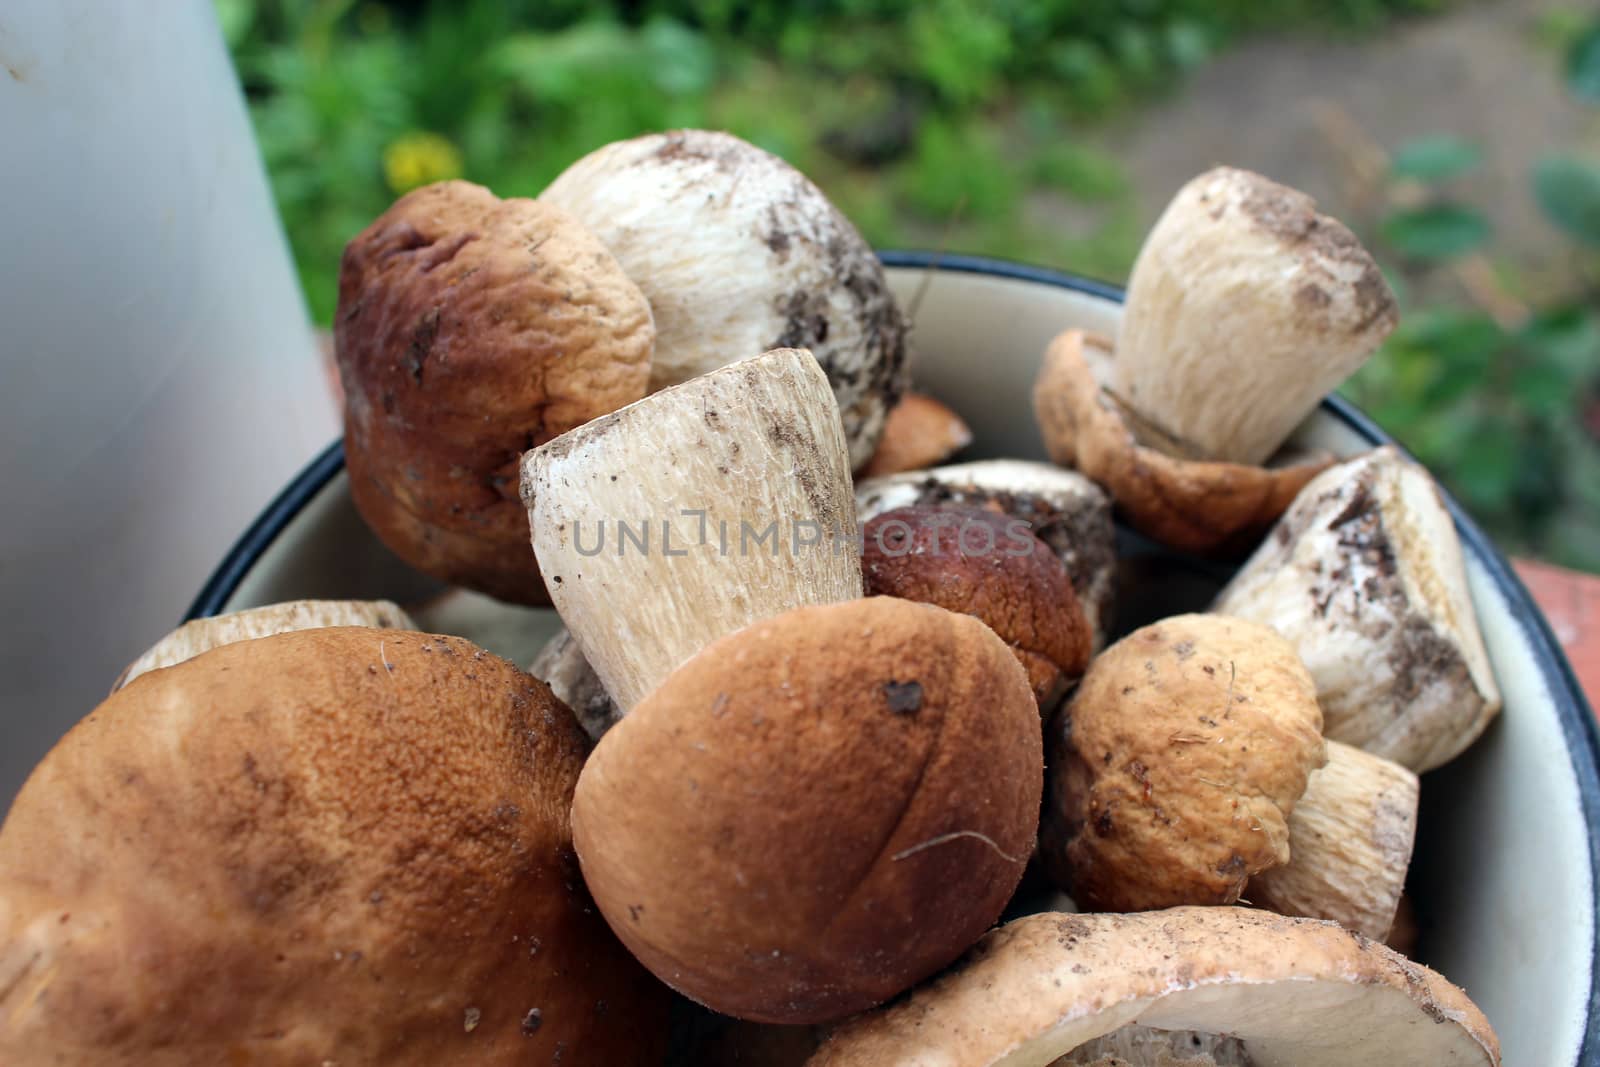 Beautiful ripe mushrooms by alexmak